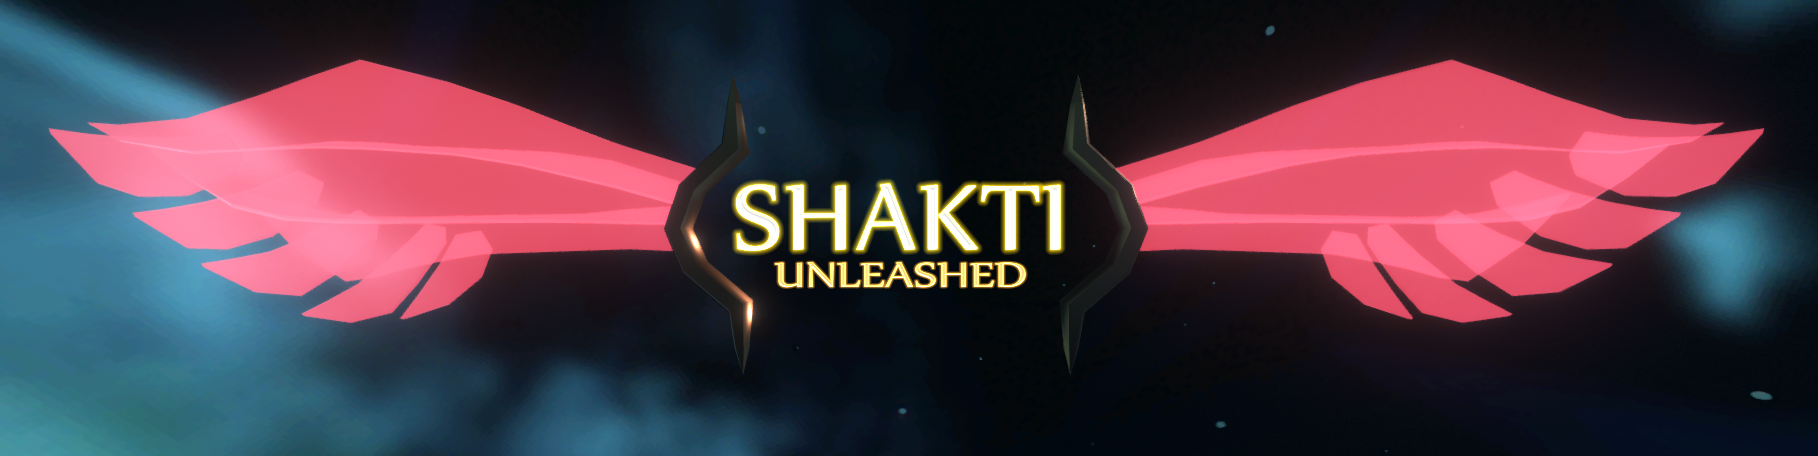 Shakti Unleashed